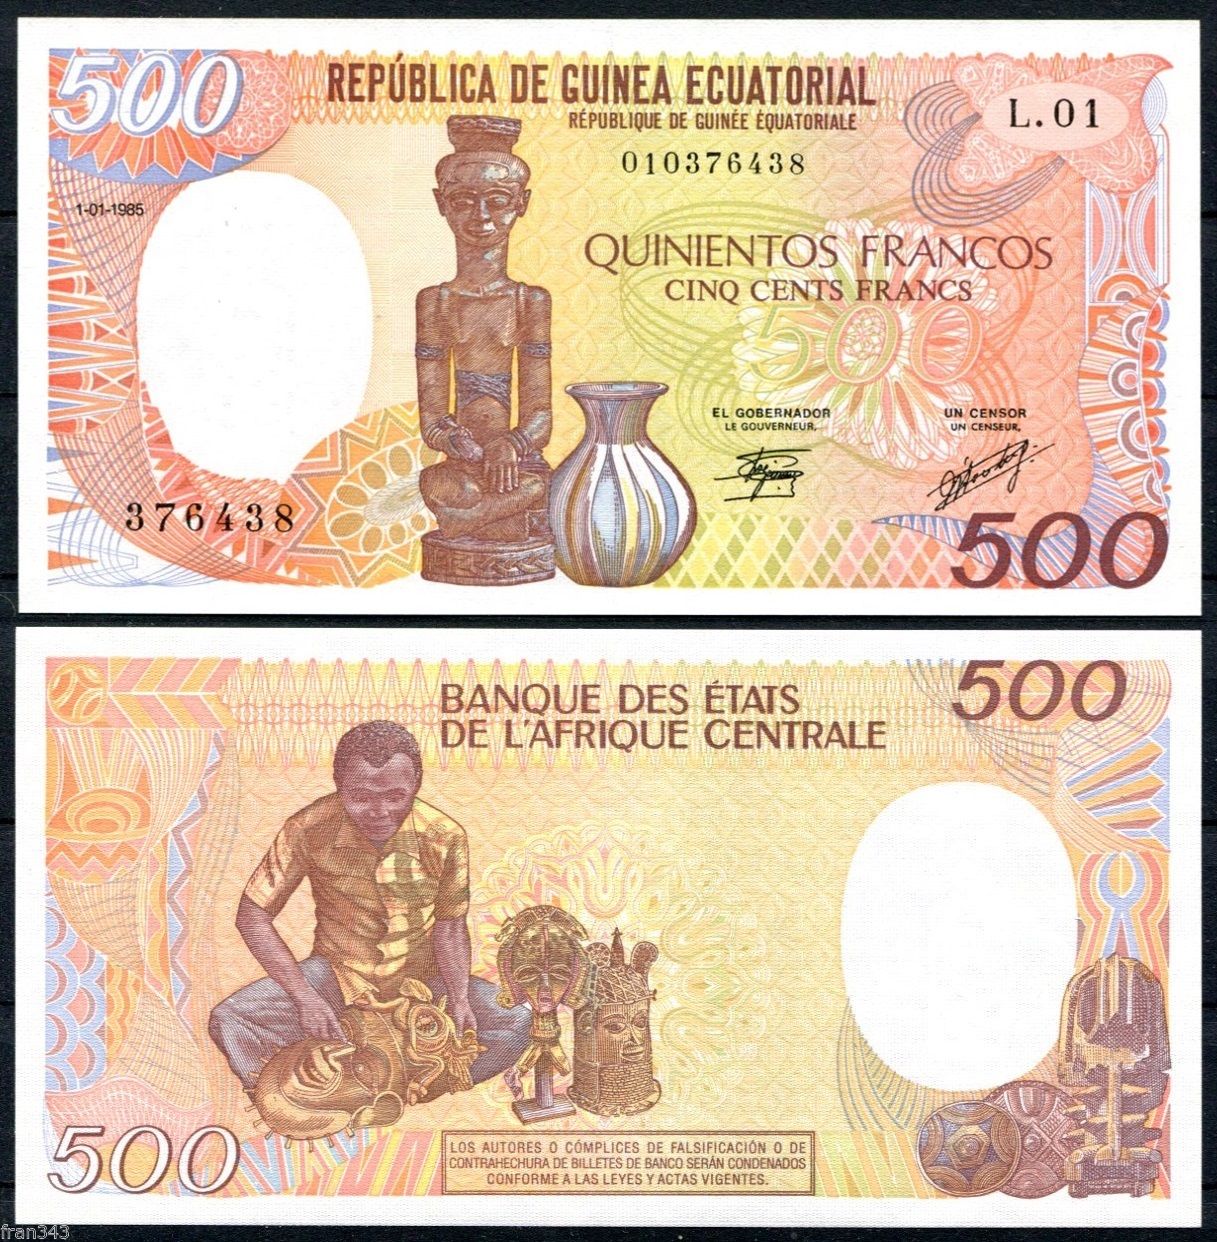 500 francs Equatorial Guinea 1985